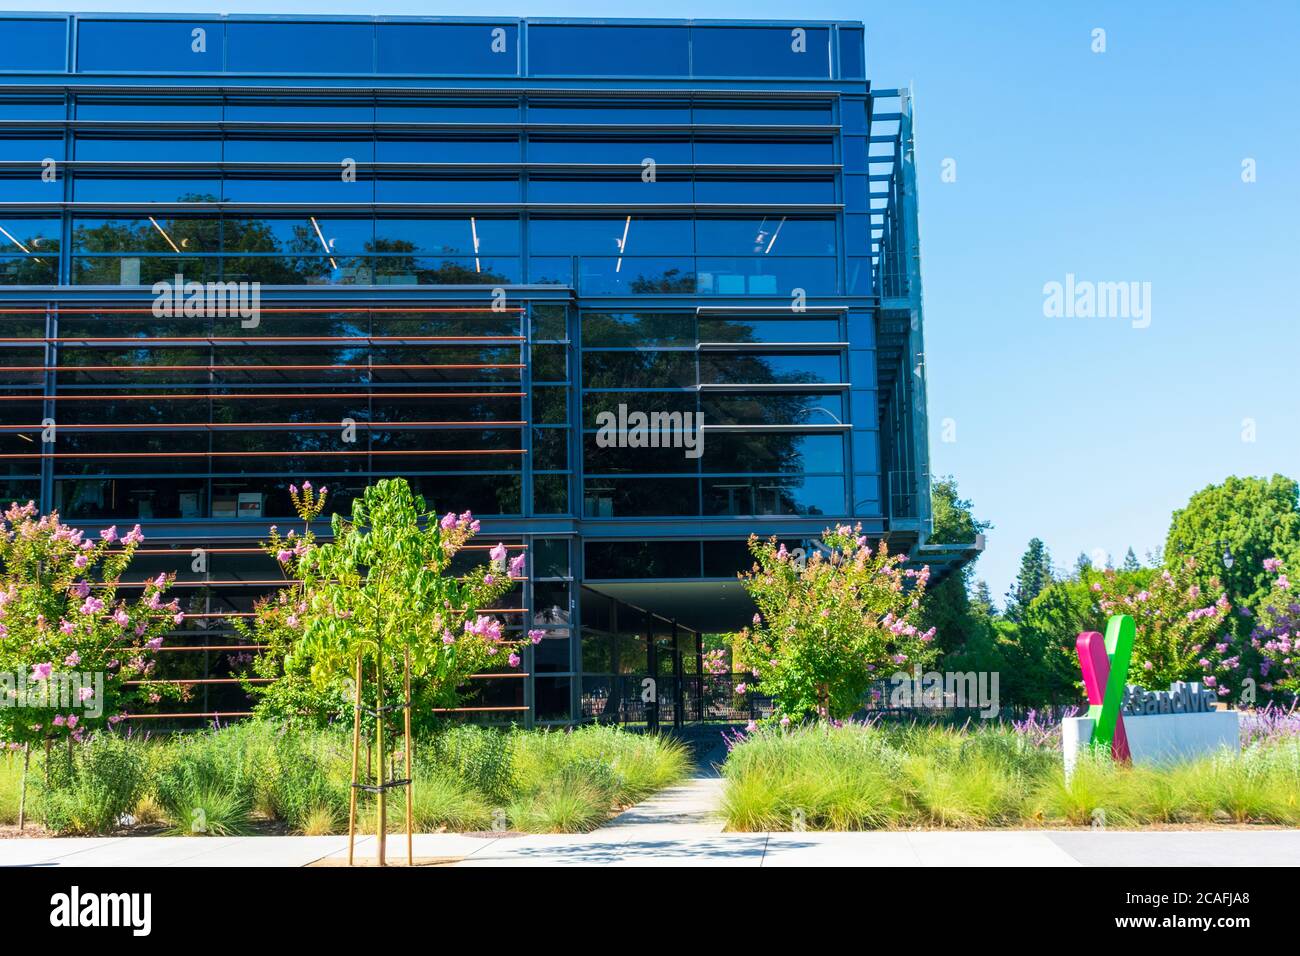 23undMe Hauptsitz Campus eines privat gehaltenen persönlichen Genomik und Biotechnologie-Unternehmen in Silicon Valley - Sunnyvale, Kalifornien, USA - 2020 Stockfoto